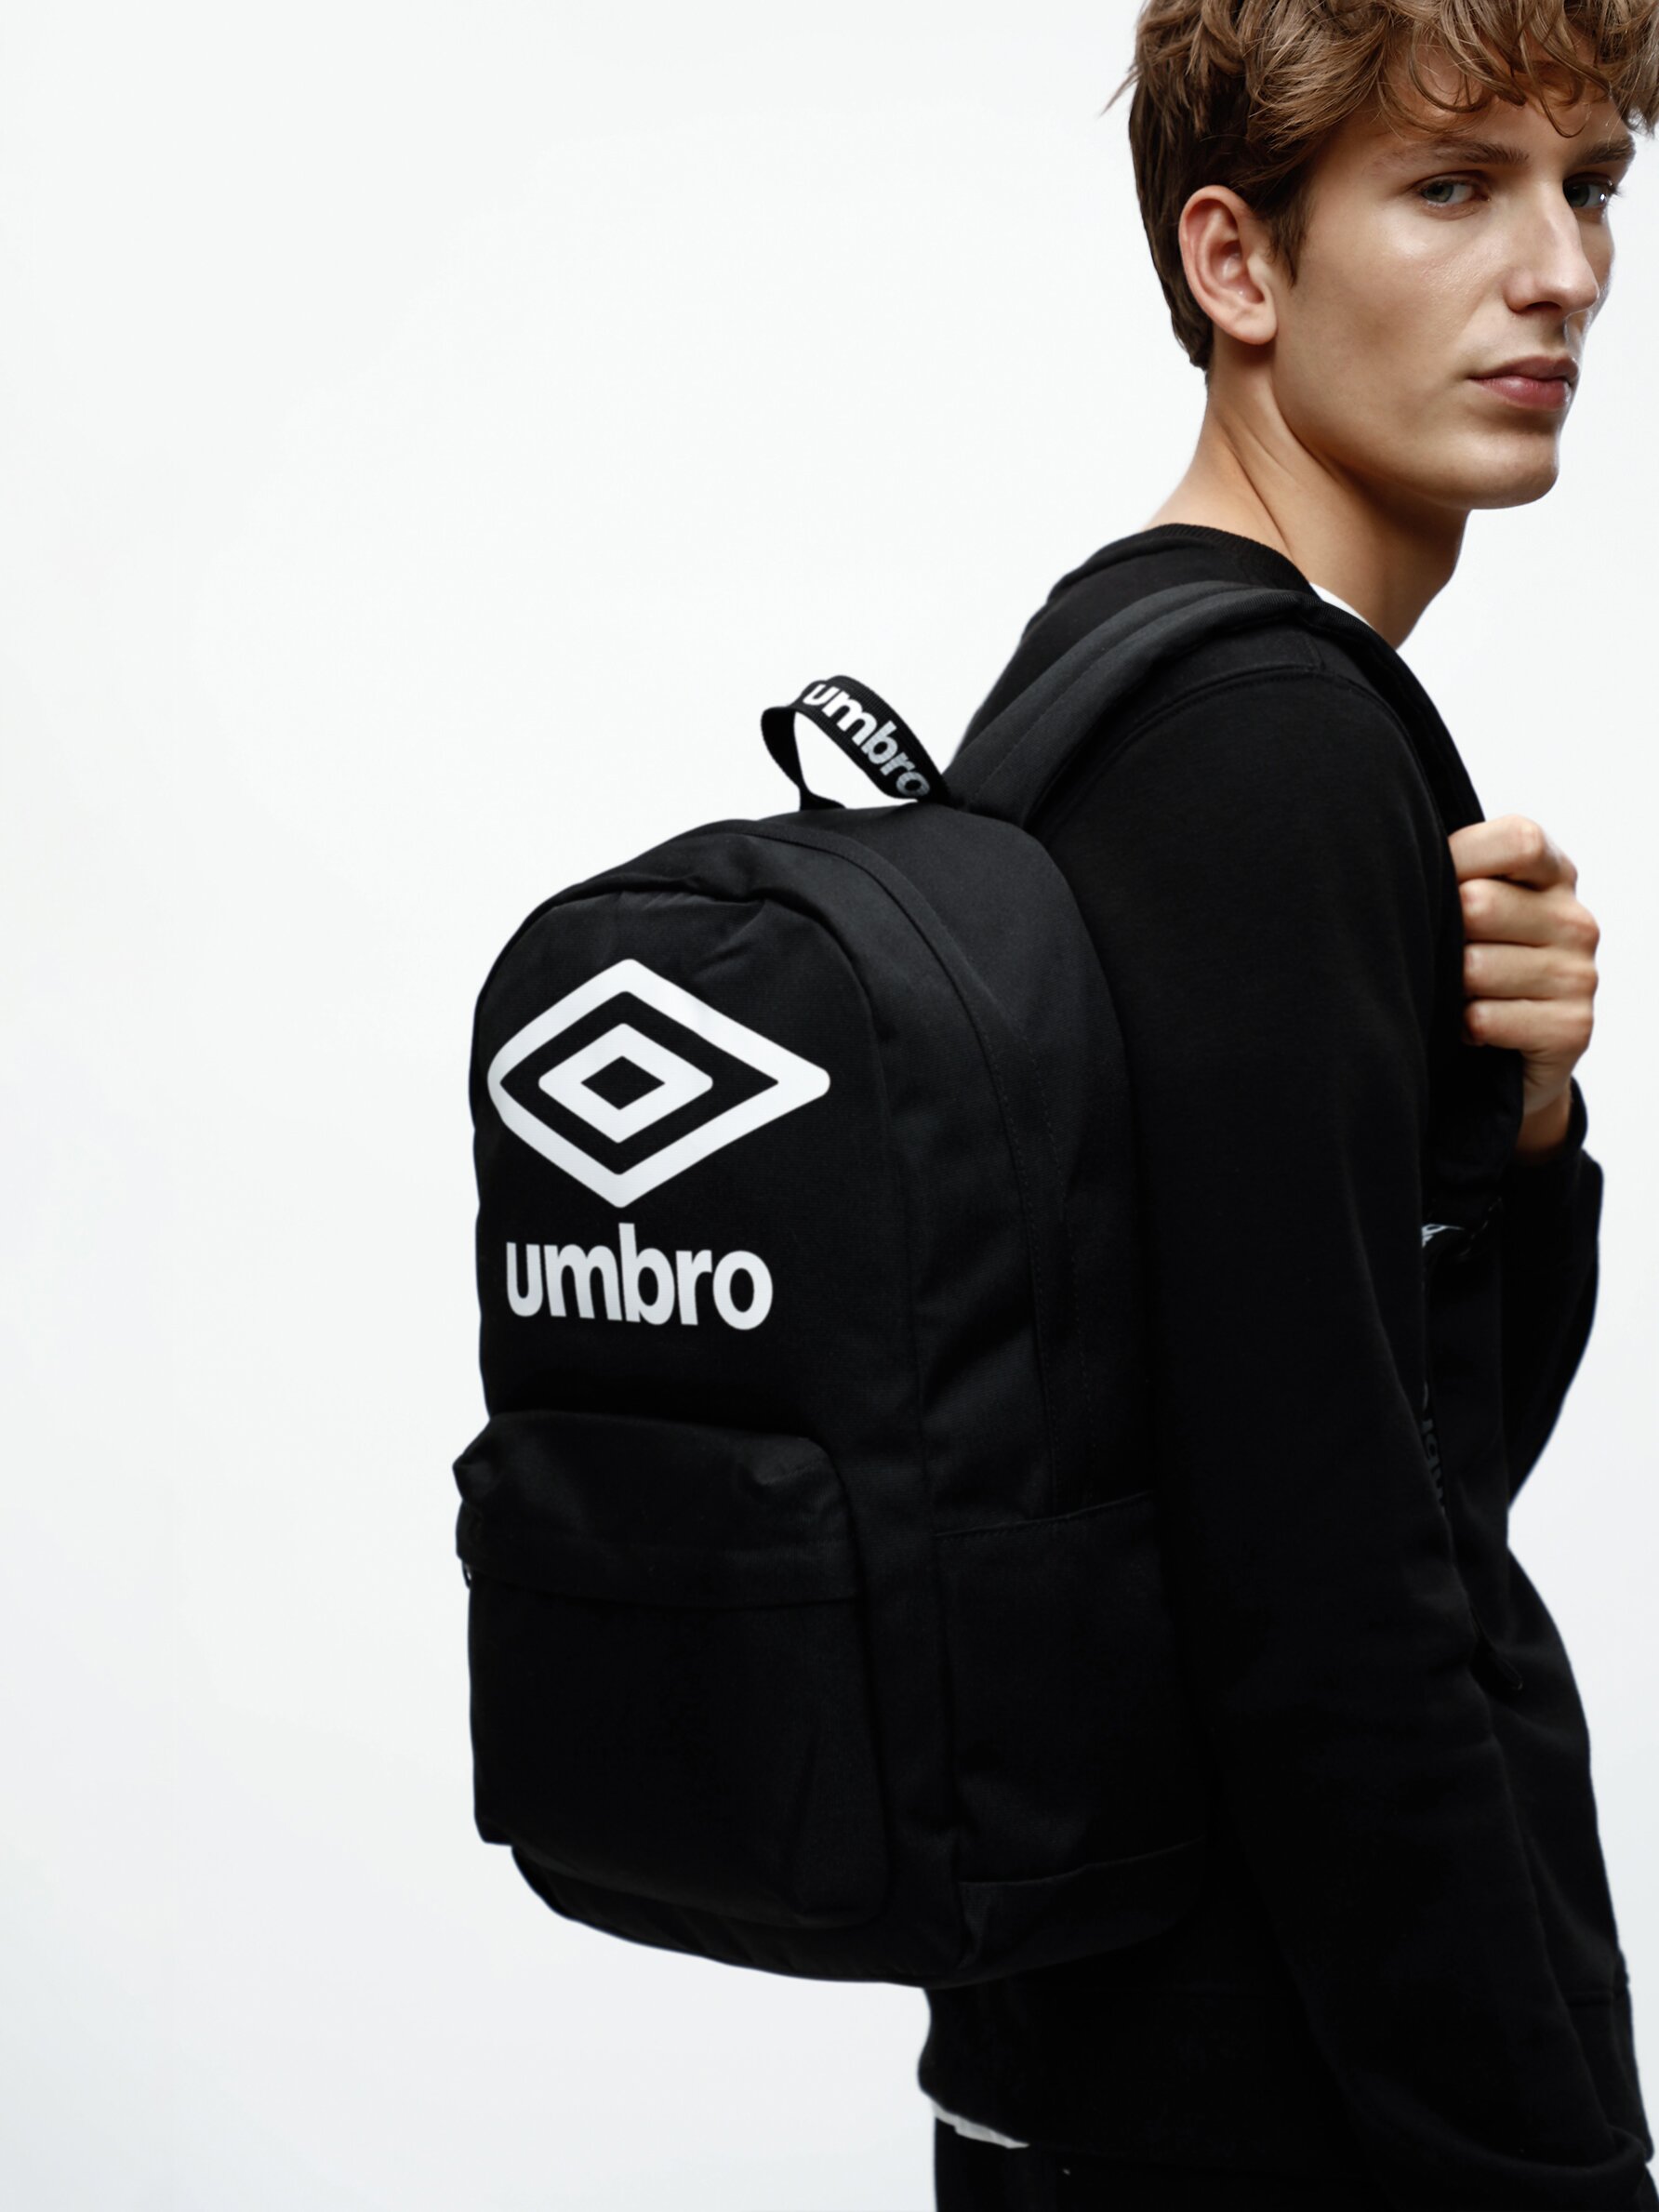 Umbro Backpack/Nylon/Black/Plain - Gem